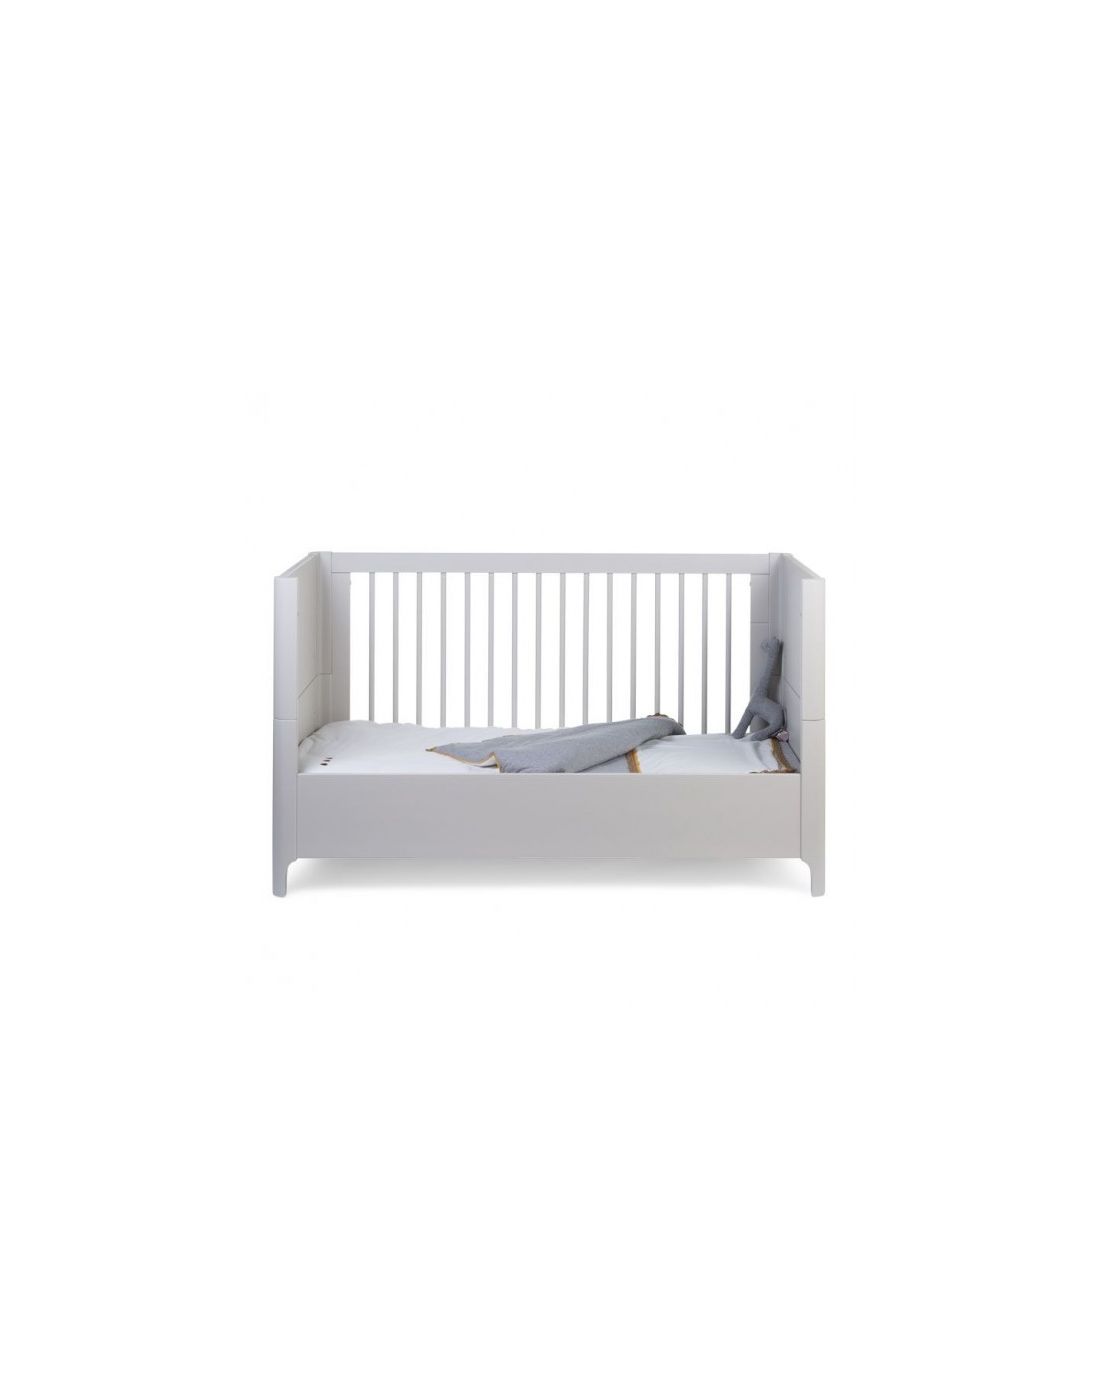 Παιδικό Κρεβάτι Childhome Rockford Sands 70*140cm